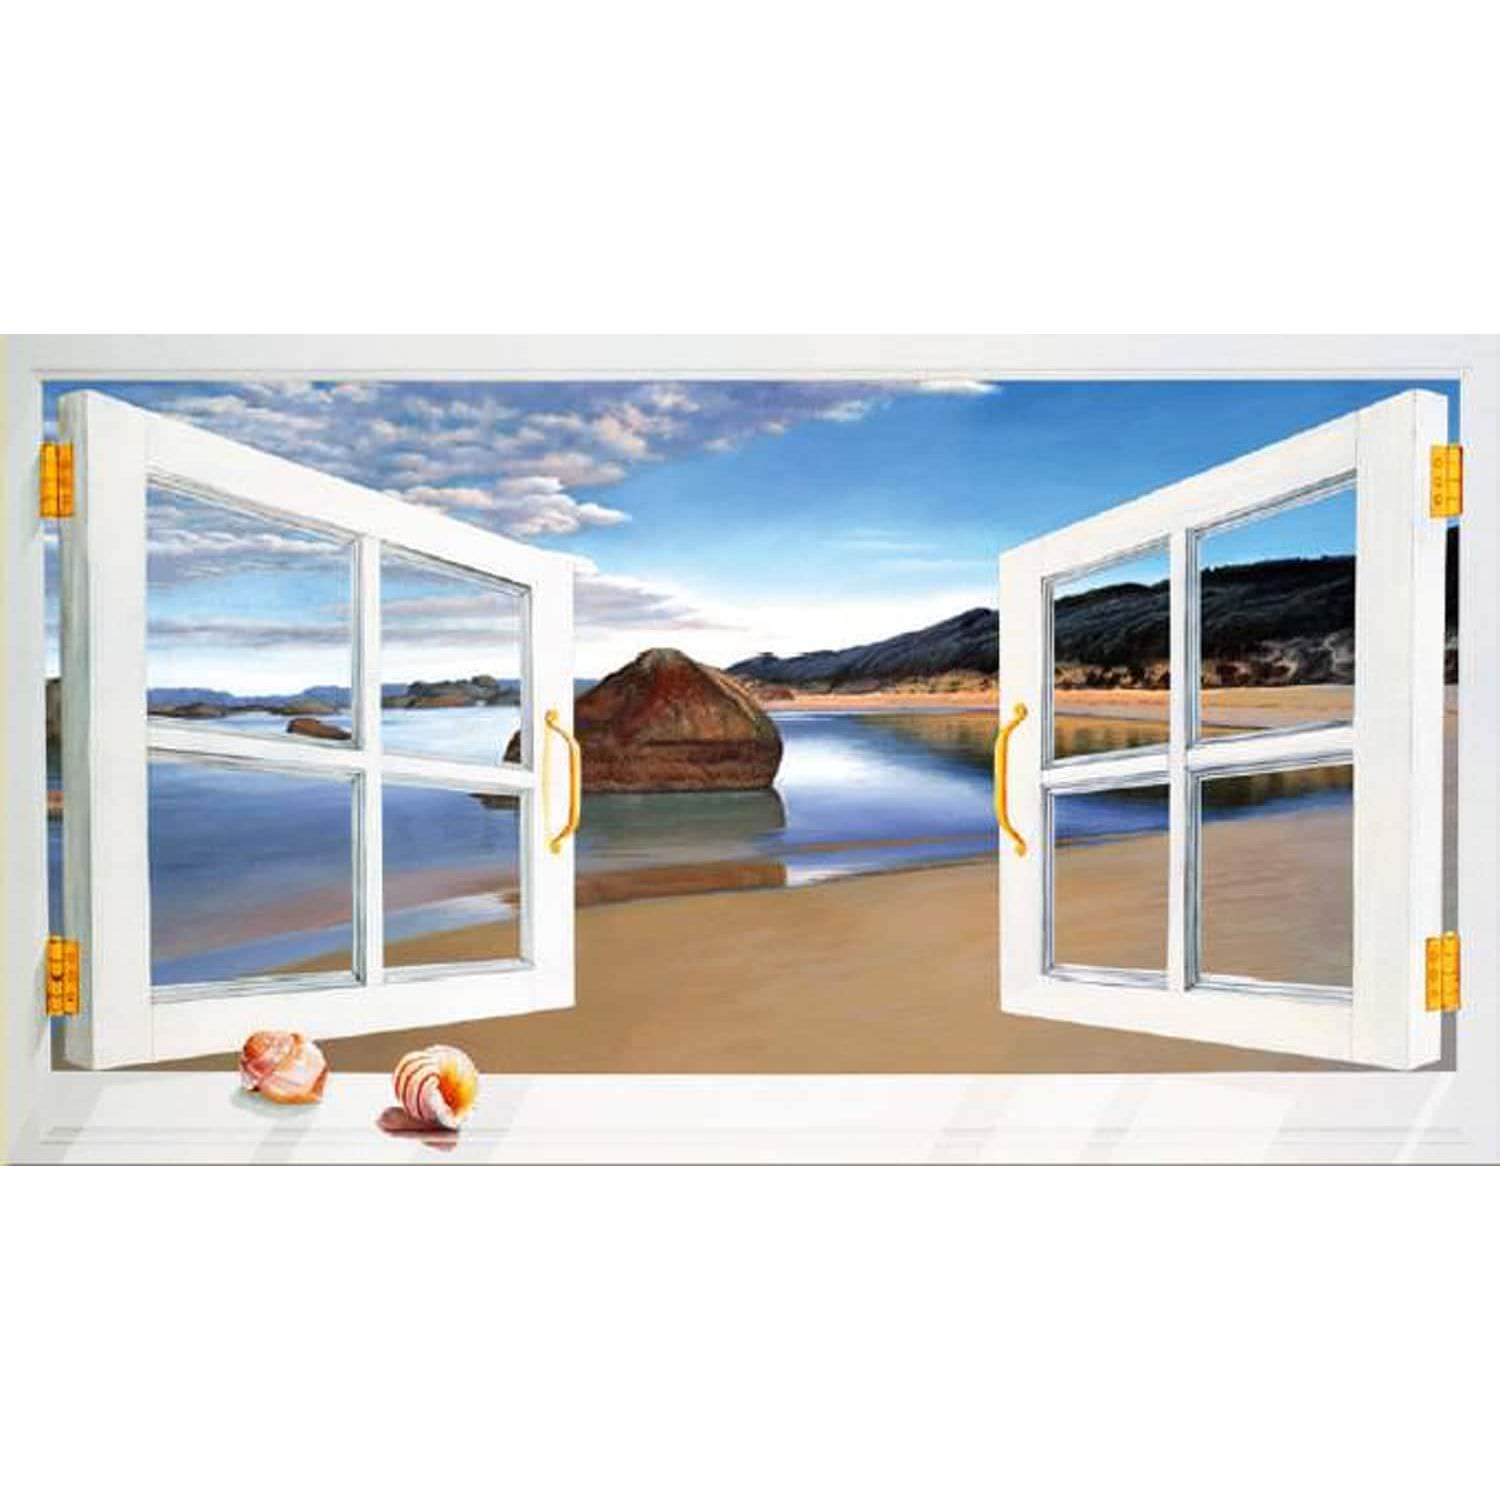 Trompe loeil window on the beach